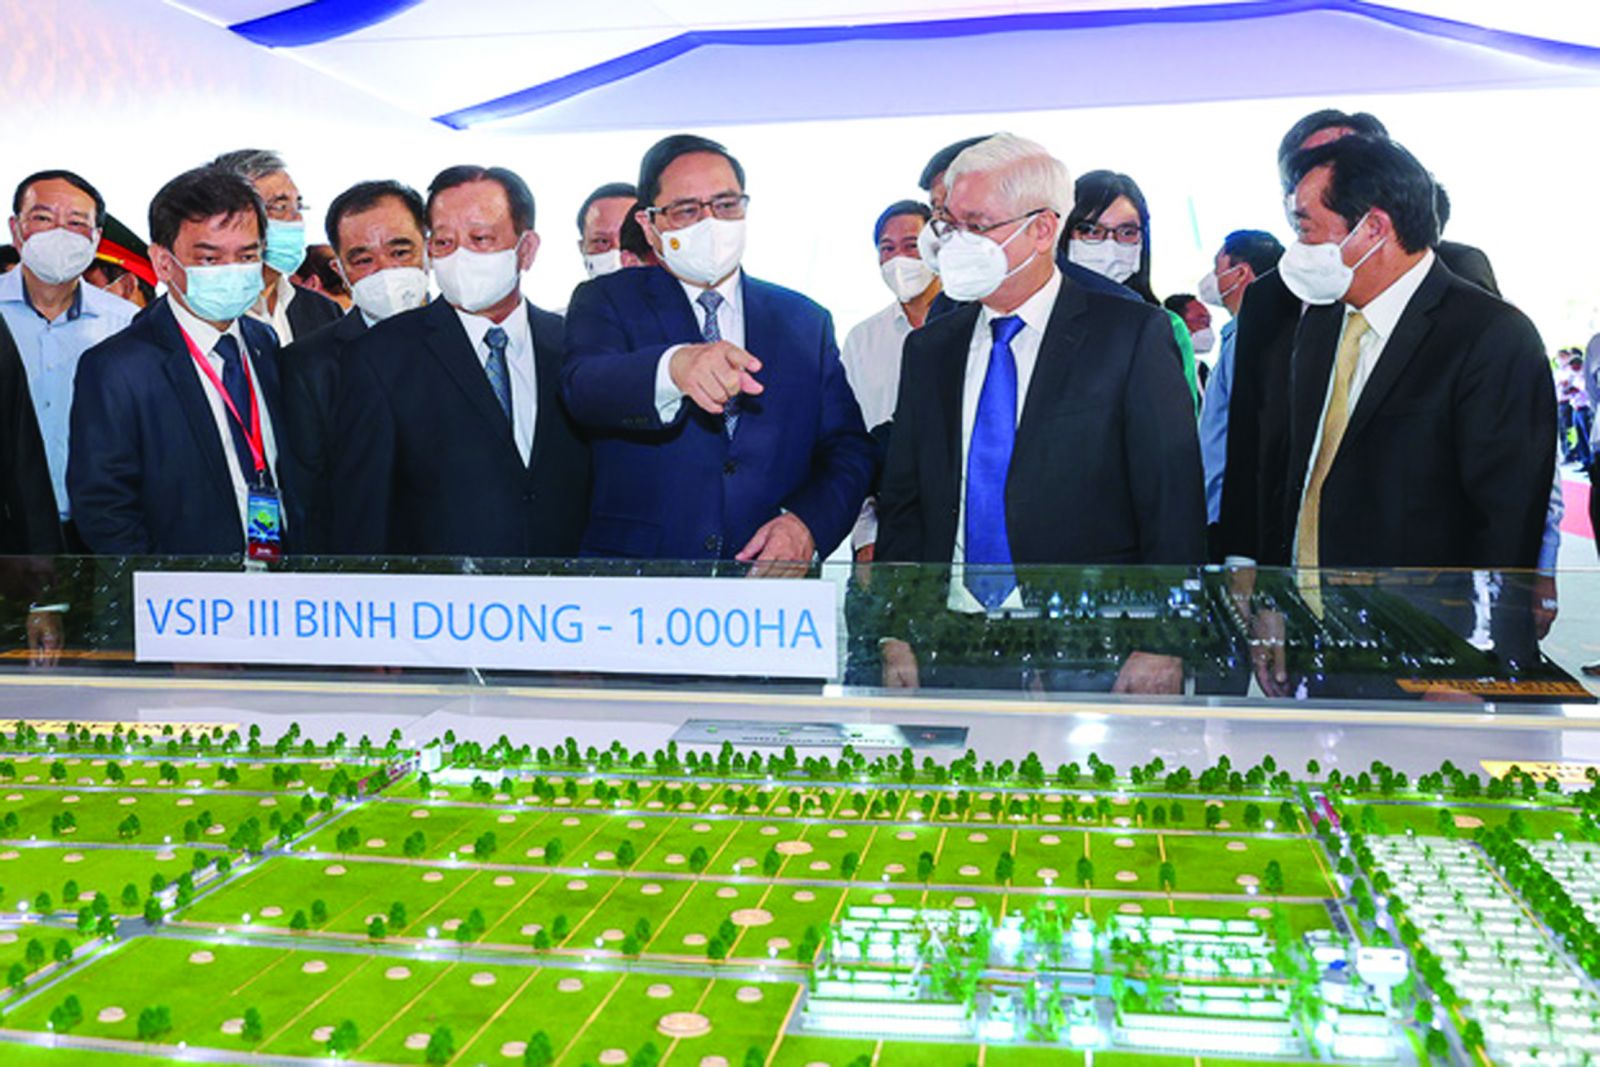  Thủ tướng Phạm Minh Chính tham quan mô hình Khu công nghiệp VSIP III tại tỉnh Bình Dương